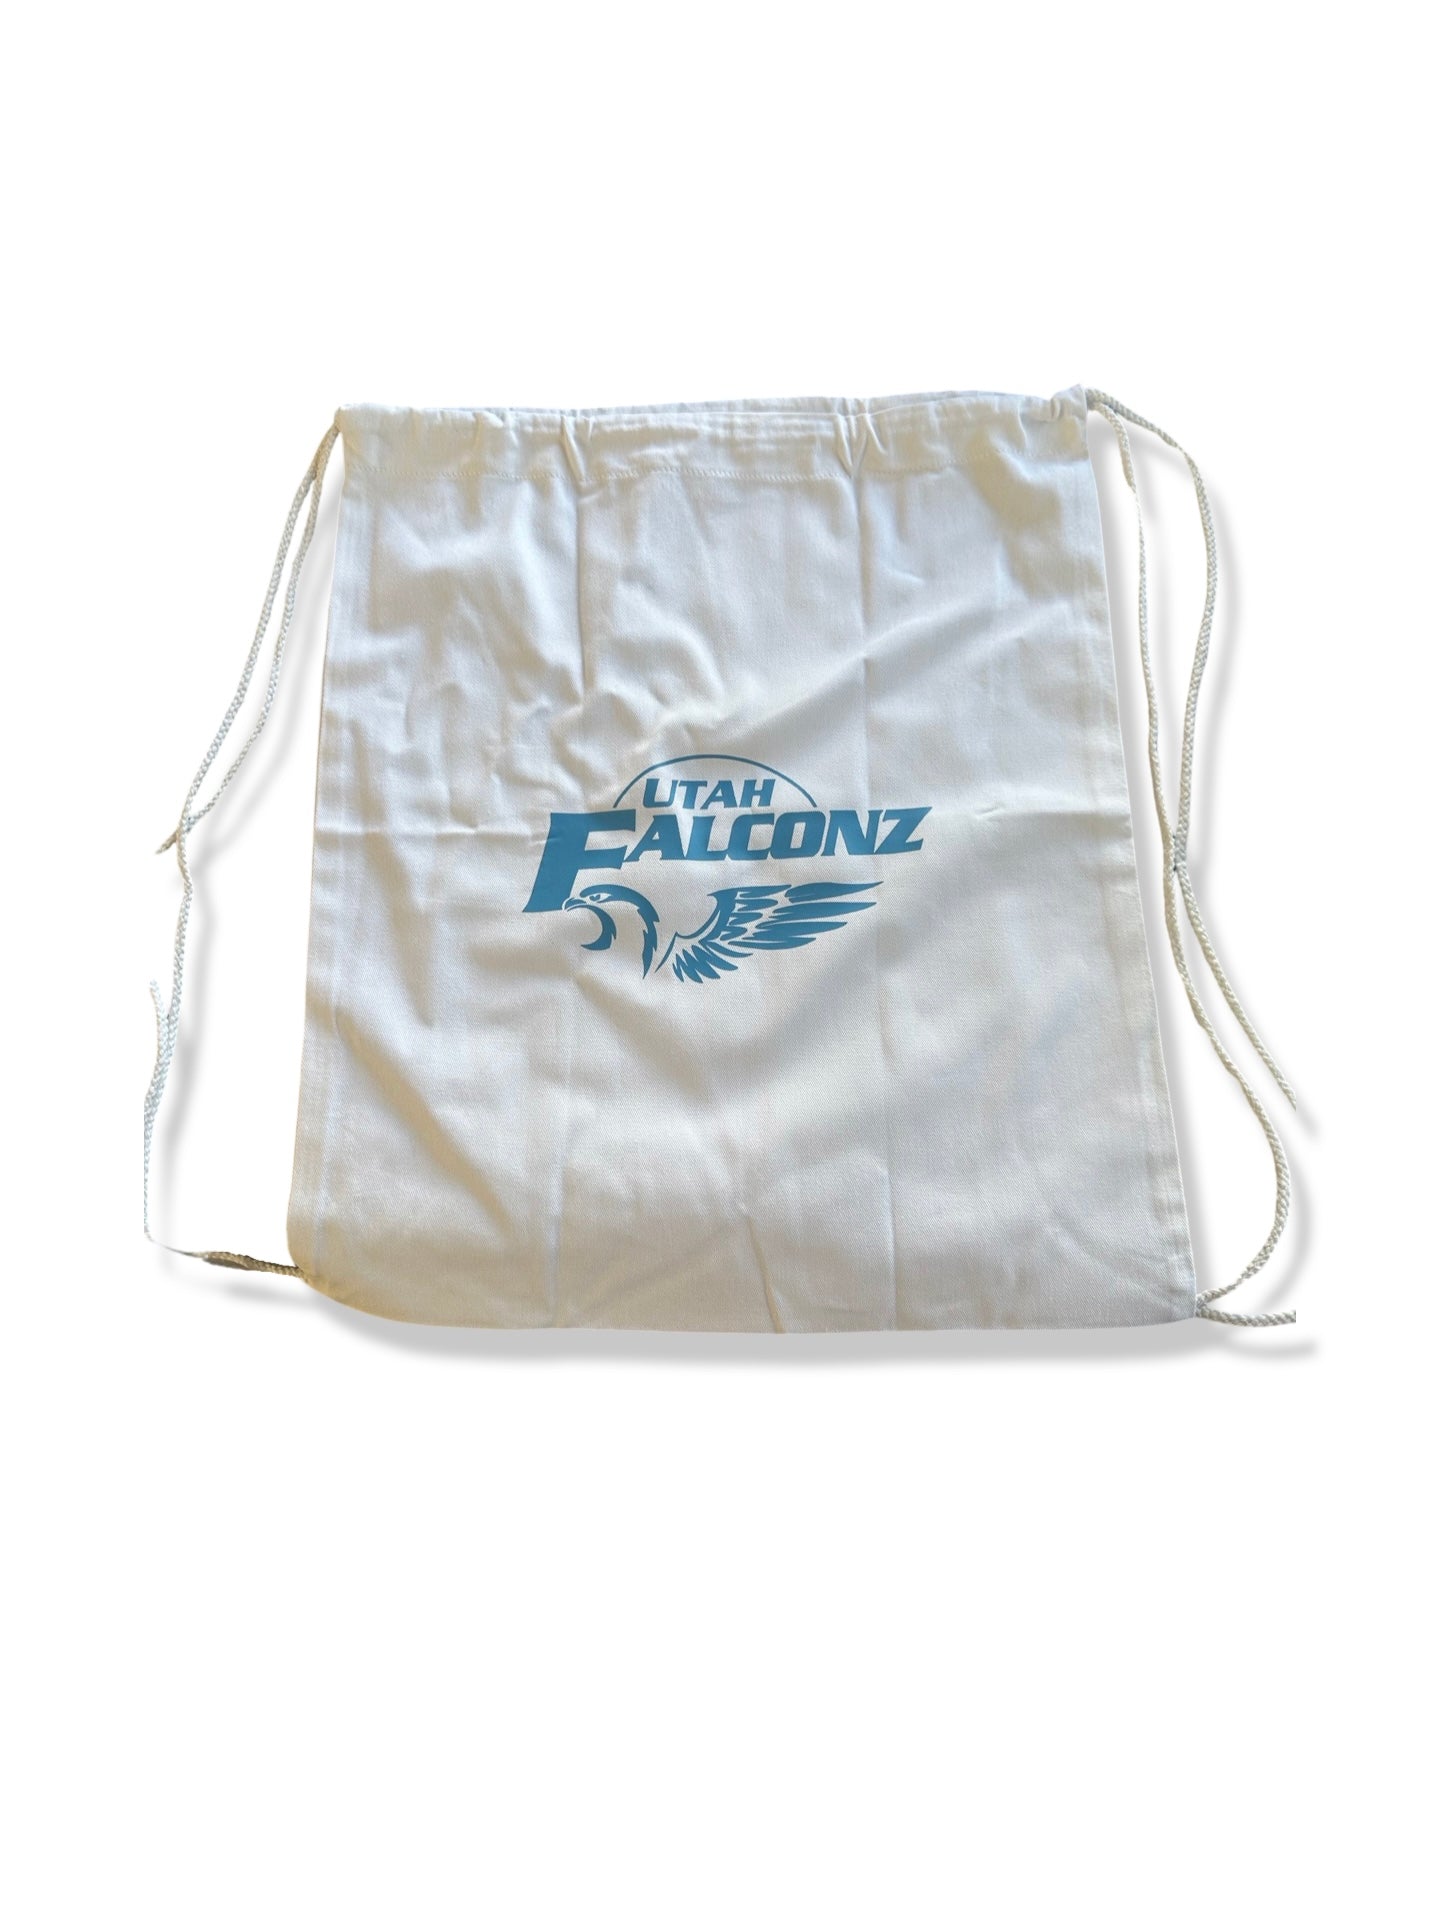 Falconz Drawstring Bag